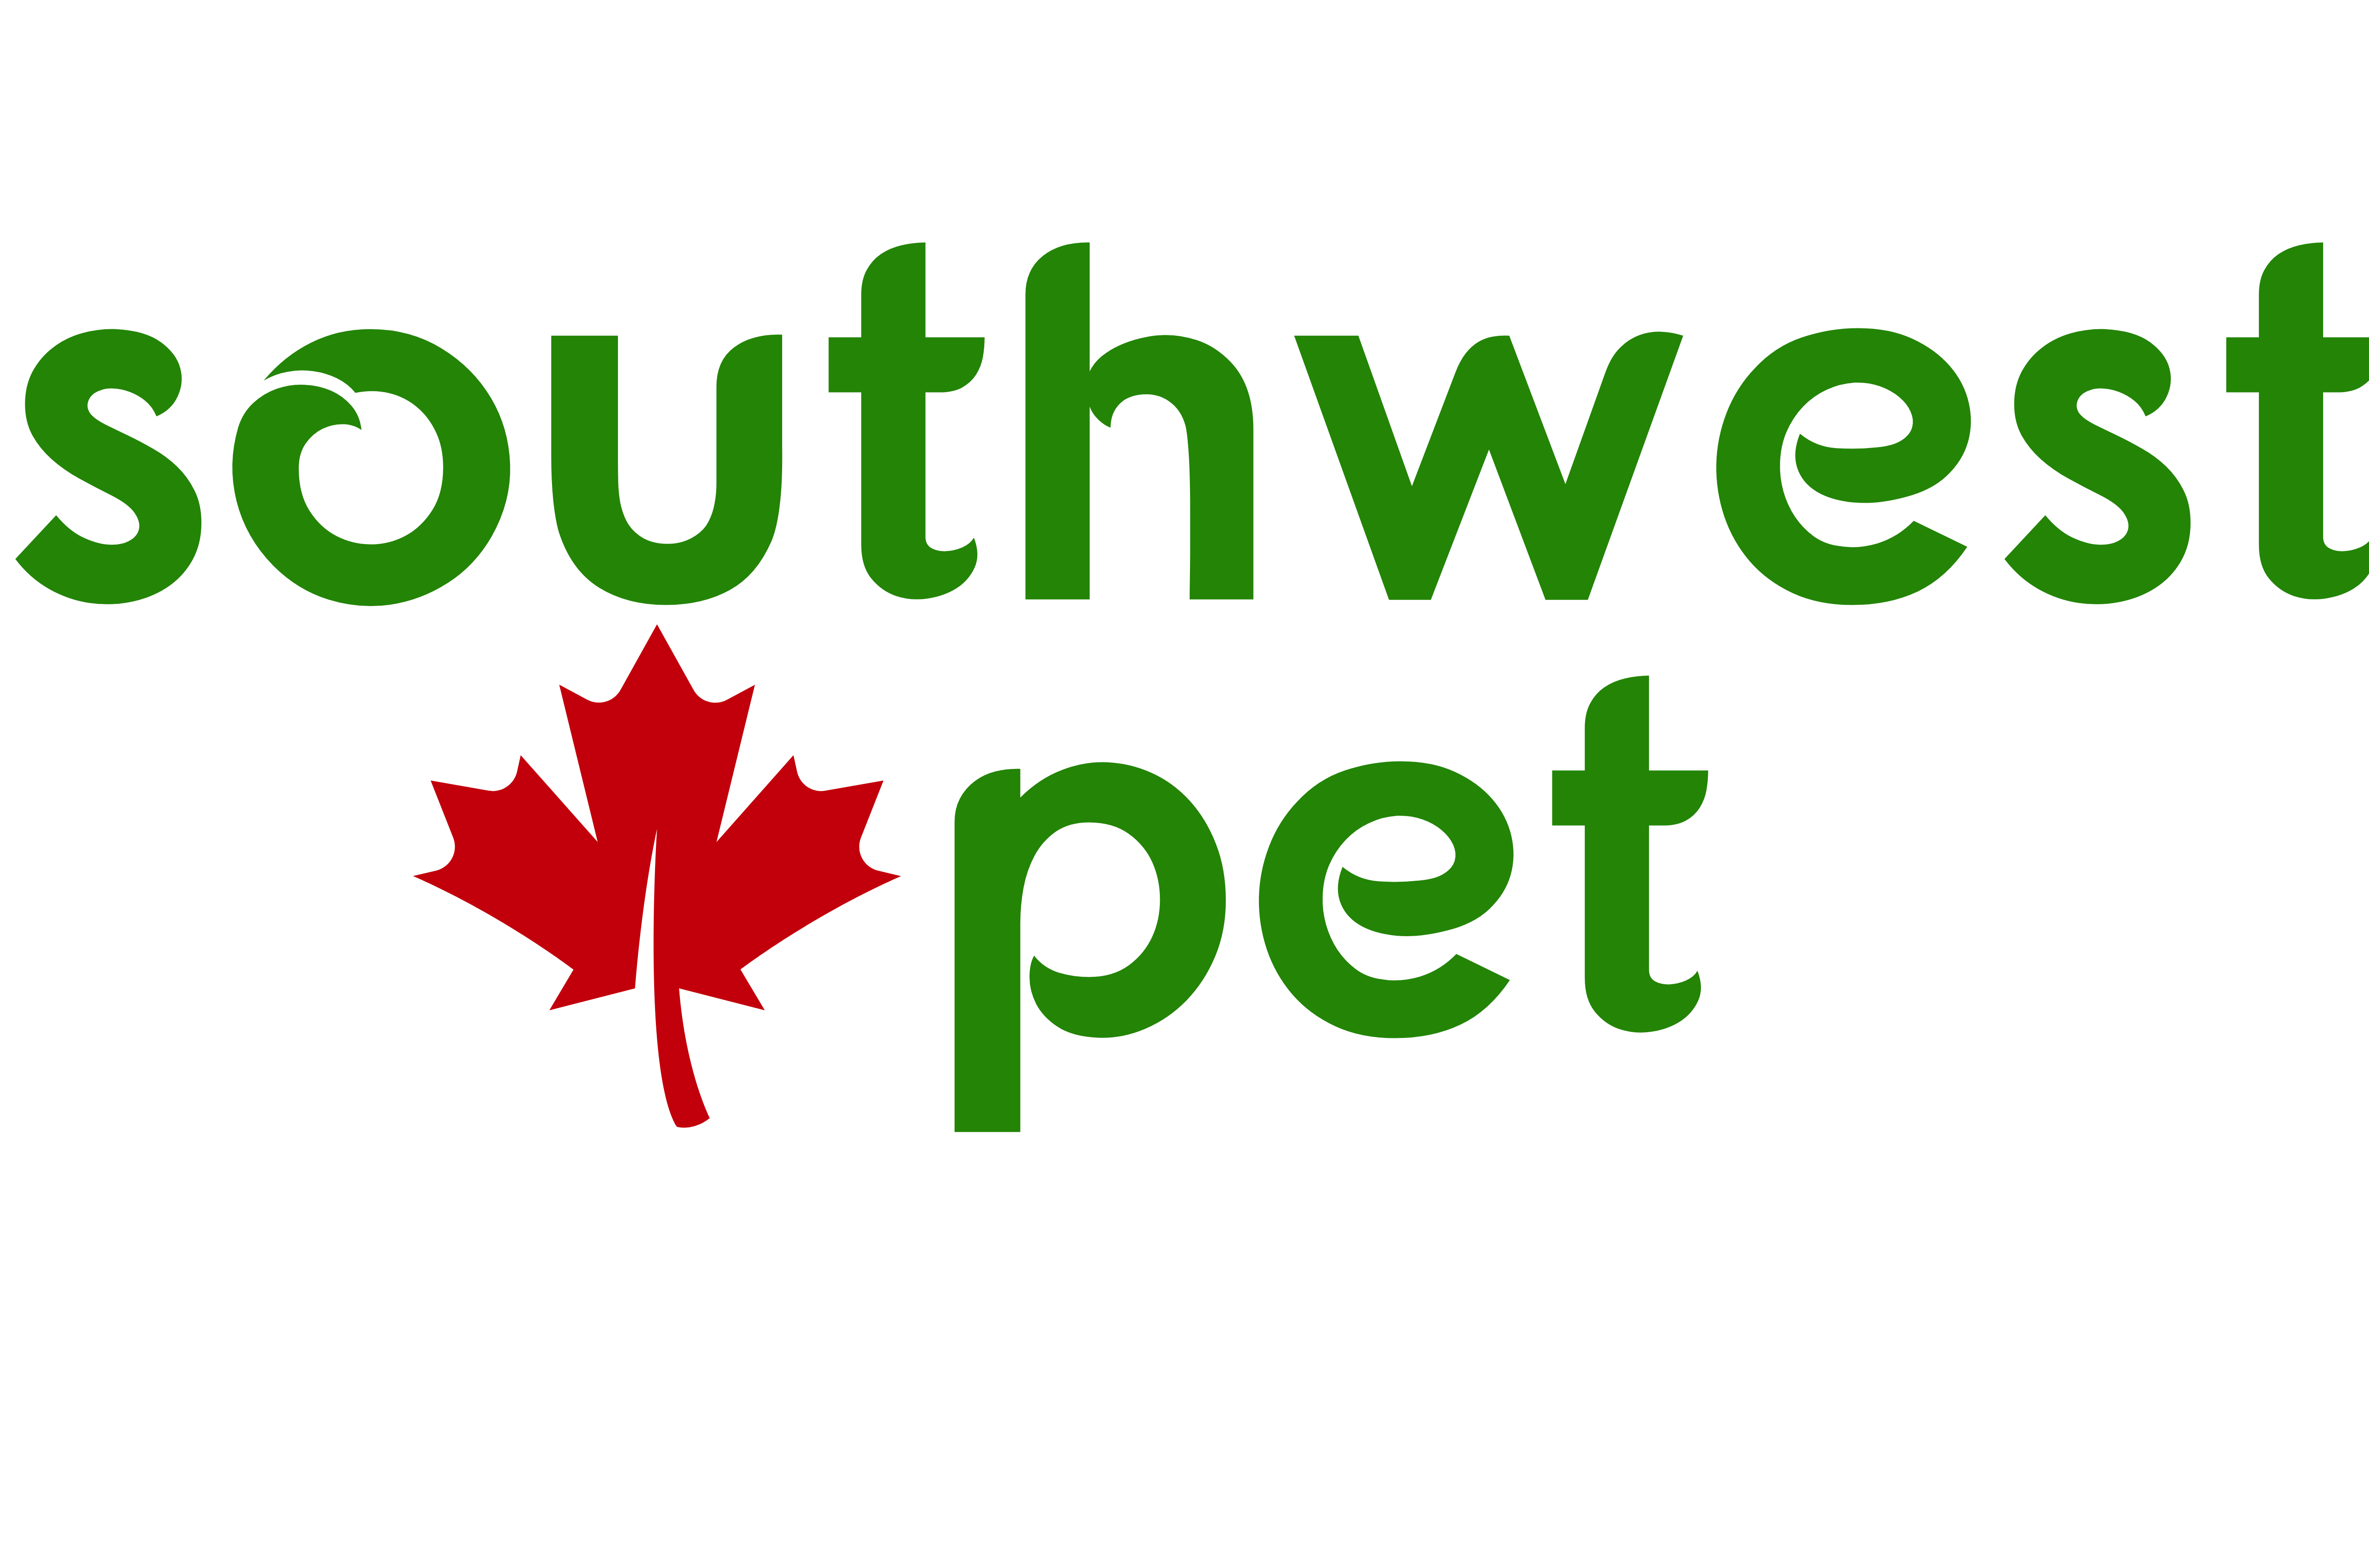 Southwest Pet - London's Premier Pet Store